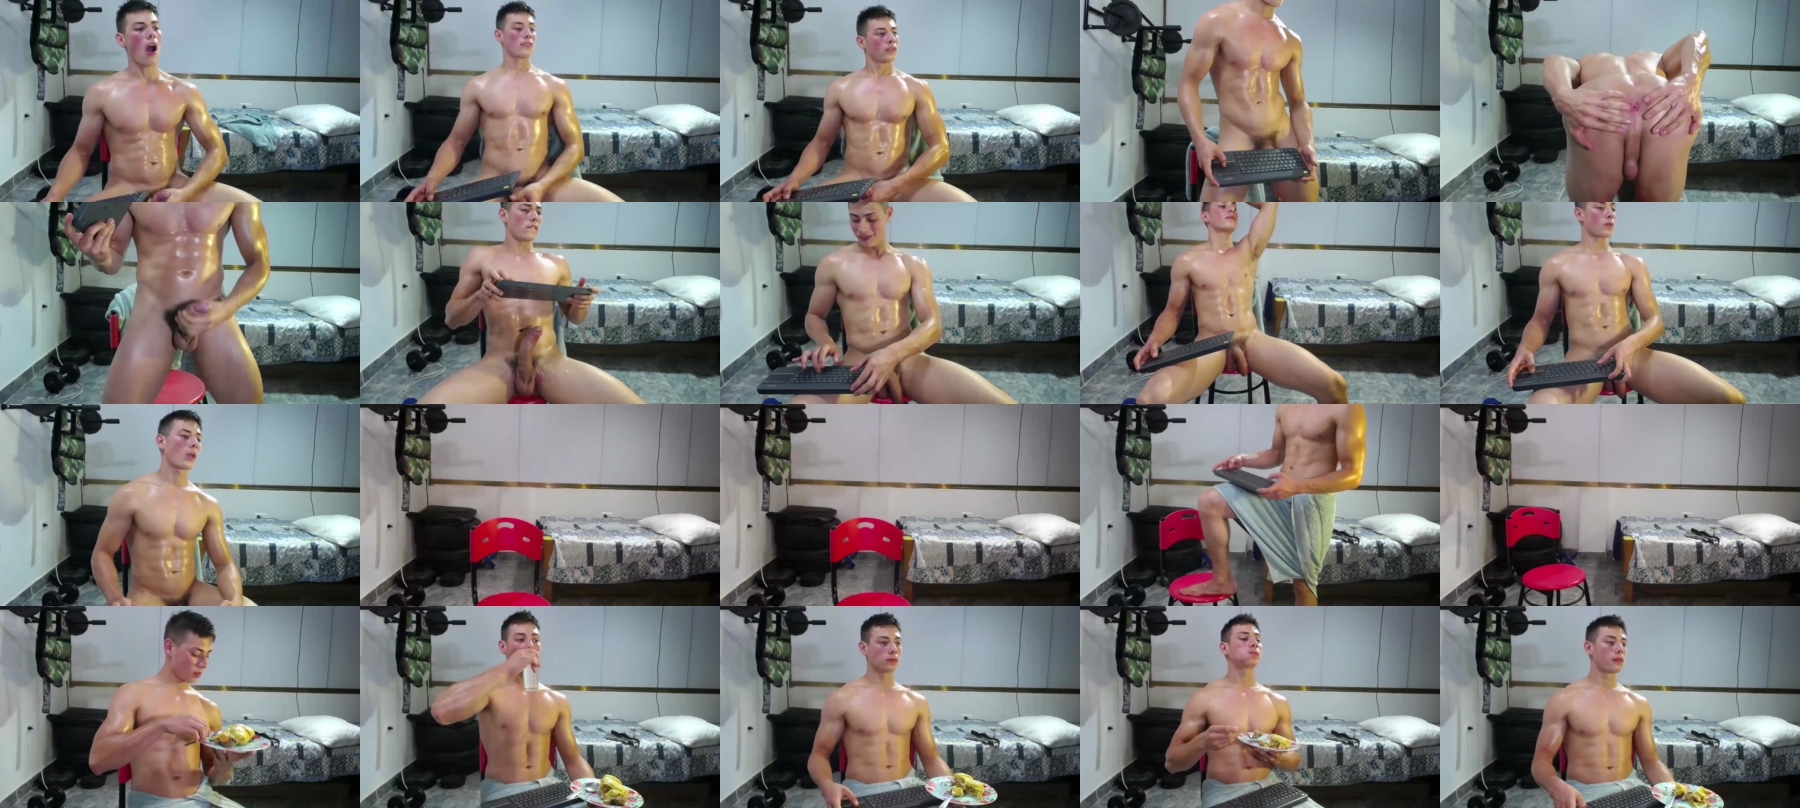 Nick_Zackk  14-09-2021 Male Webcam